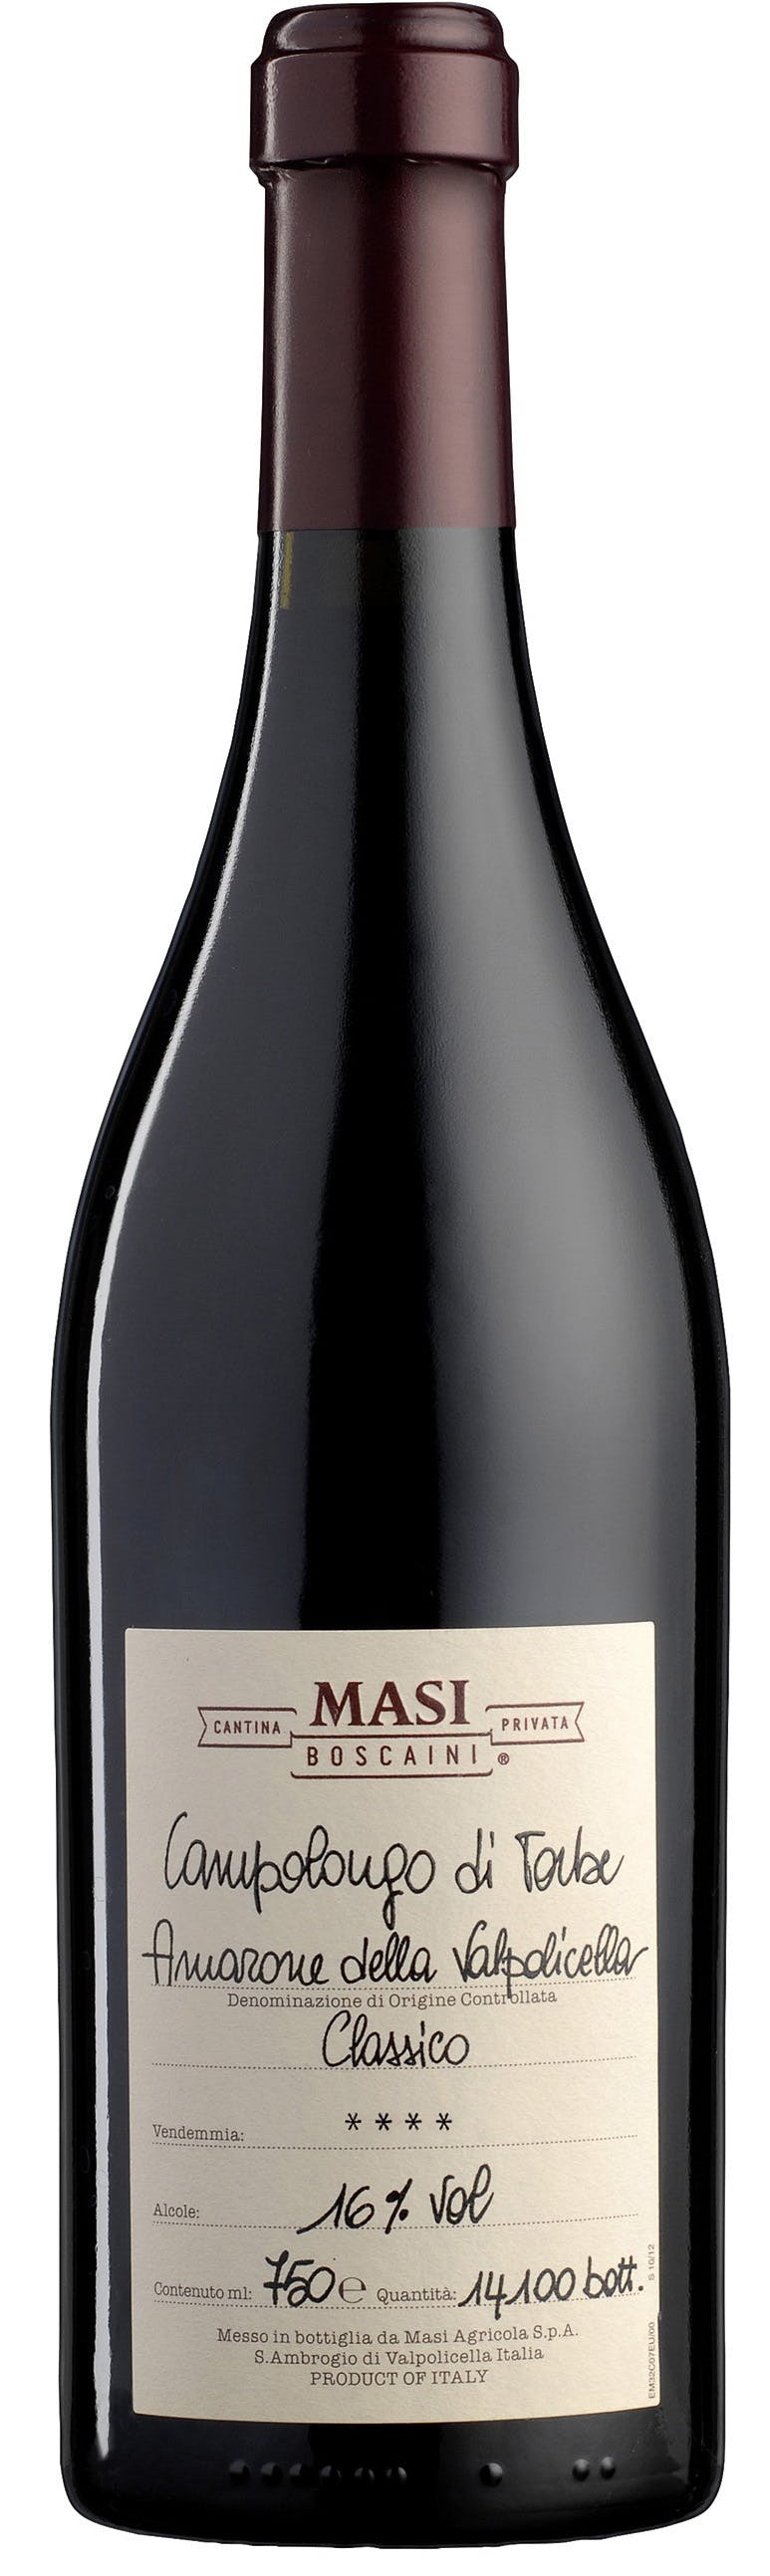 Masi Amarone della Valpolicella Classico Campolongo di Torbe 2011 750ml -  Bouharoun's Fine Wines & Spirits